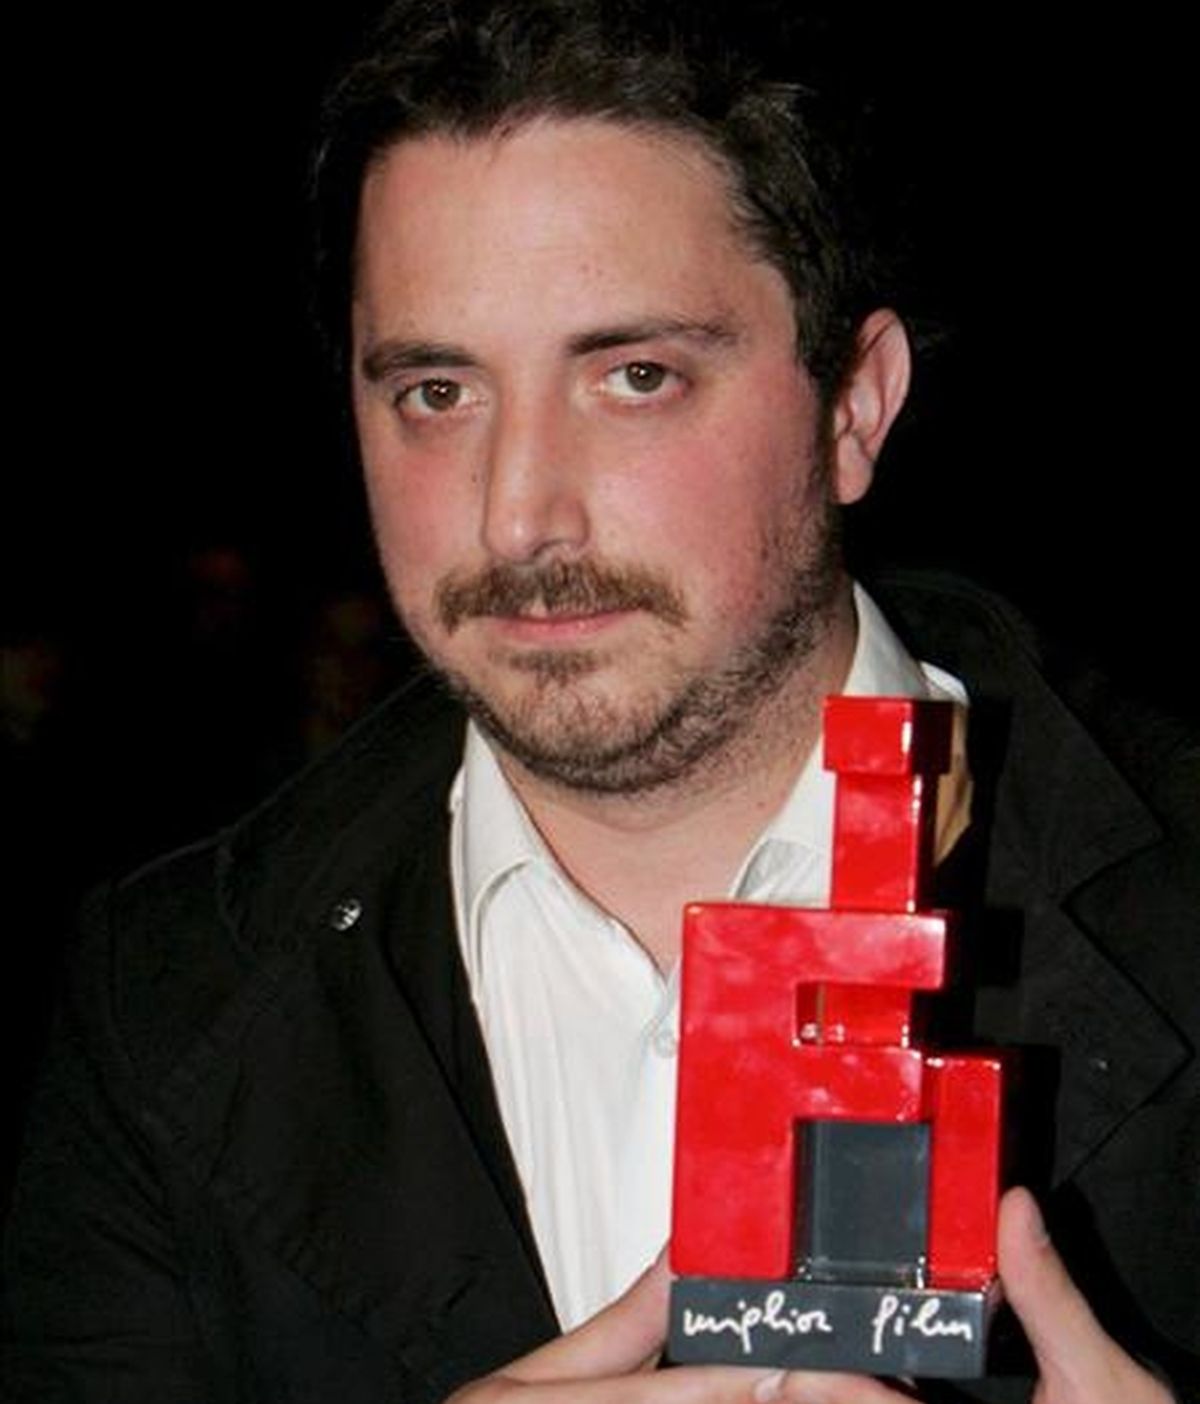 El director de cine chileno Pablo Larraín sostiene el premio concedido en 2008, como reconocimiento a su largometraje "Tony Manero", en el marco del Festival de Cine de Turín (Italia). EFE/Archivo